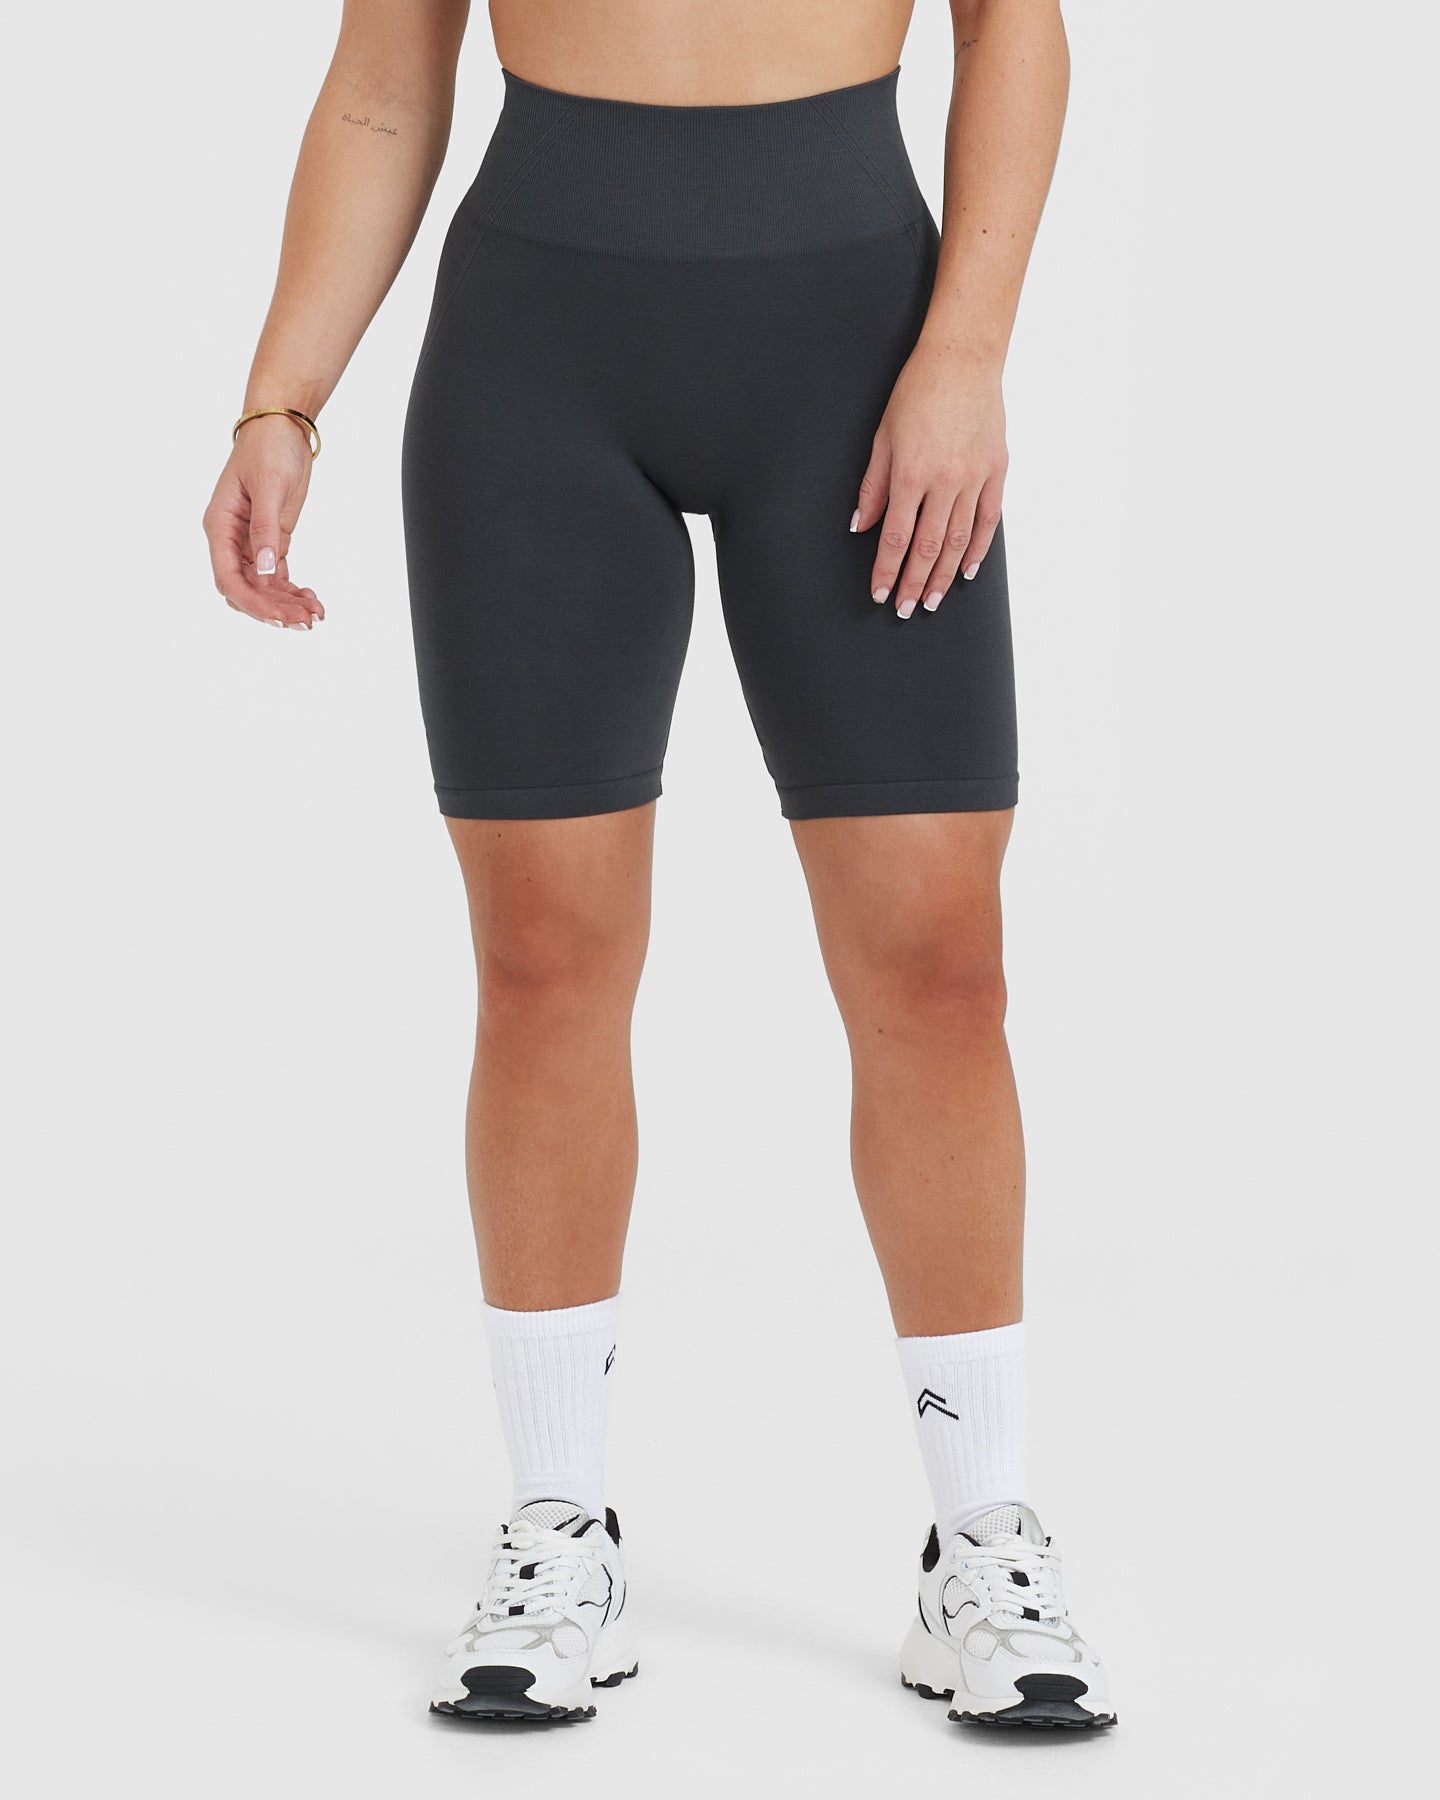 Lightweight Biker Shorts for Women - Coal